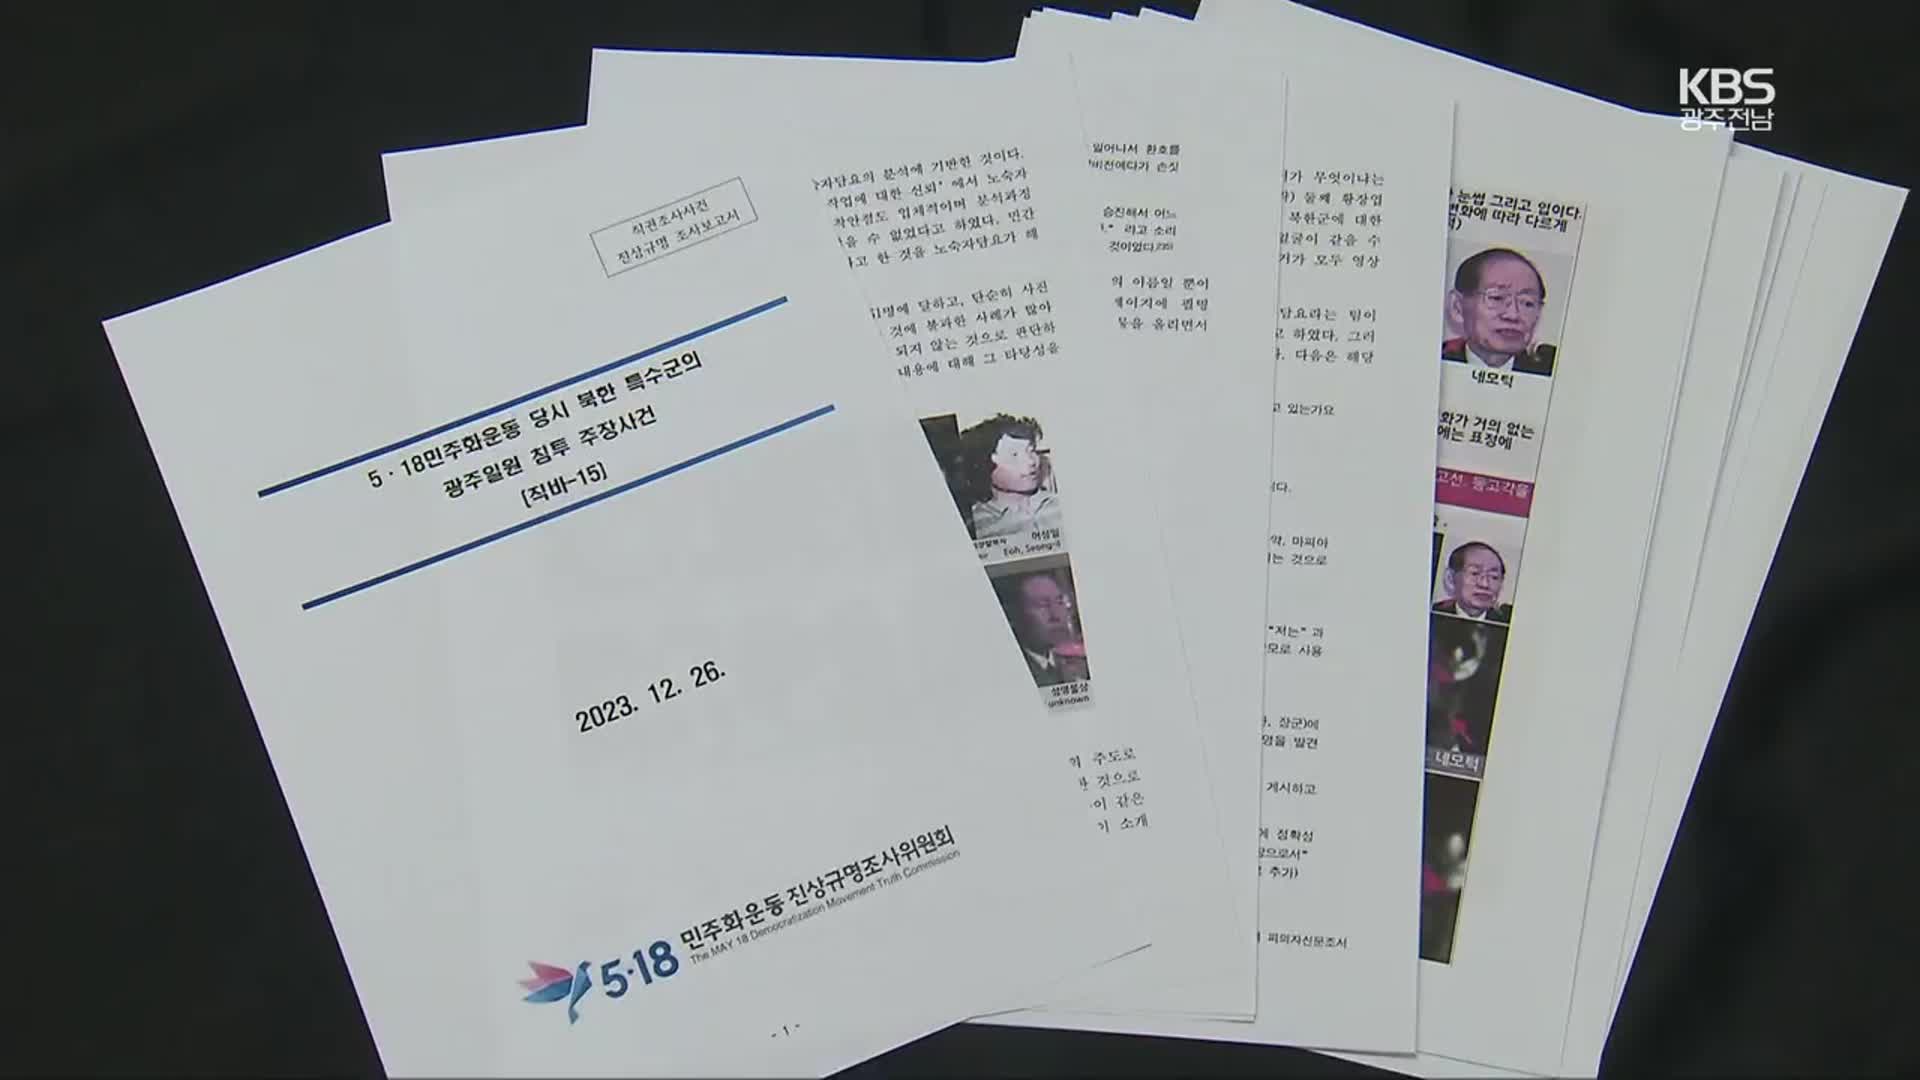 5·18조사 결과 보고서 공개 마무리…시민사회 싸늘